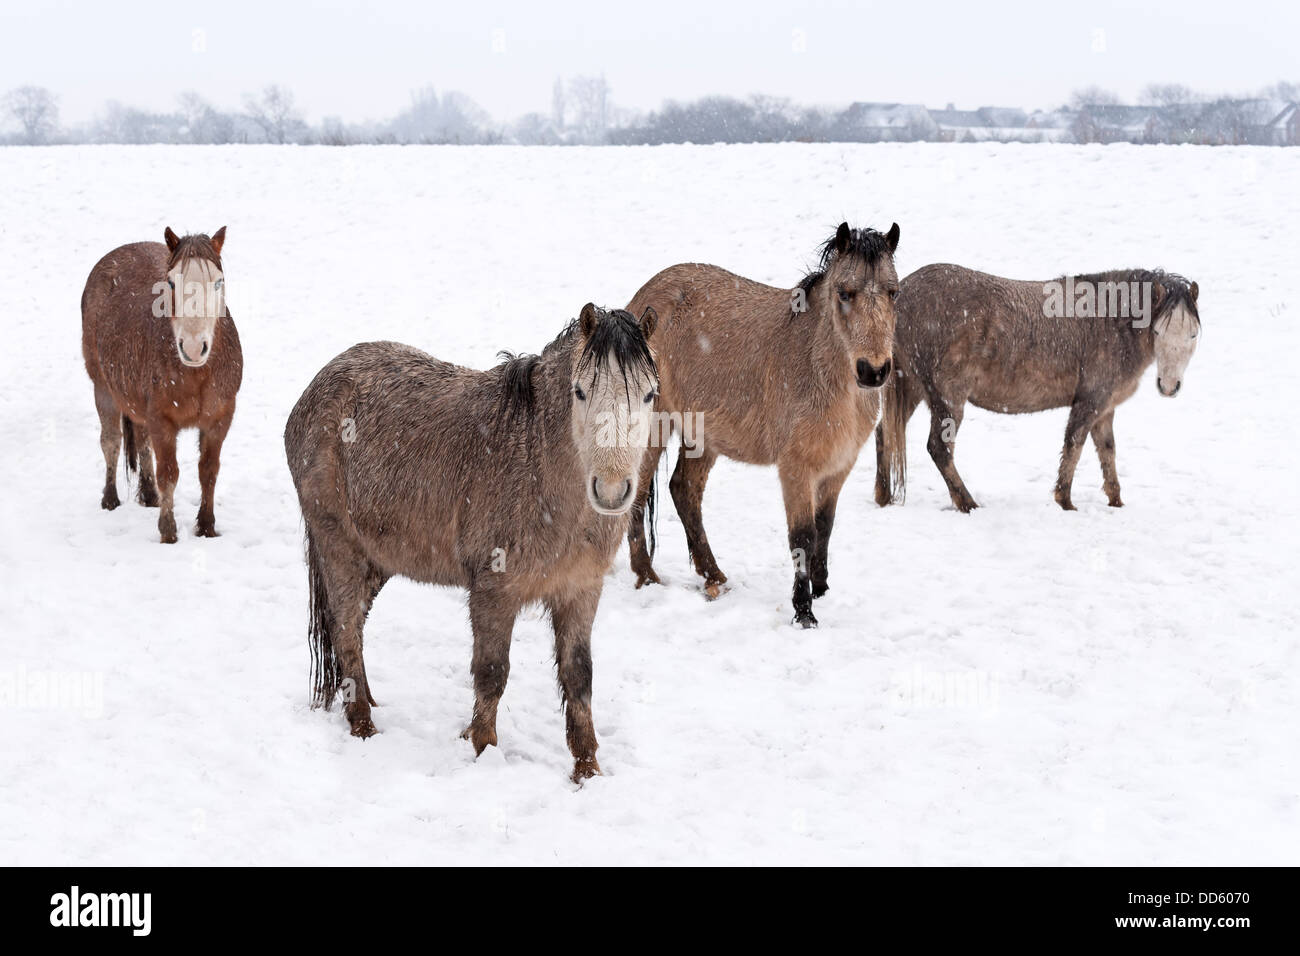 Eine kleine Gruppe von wilden Moorland Ponys im Winter Schneefall abgebildet. Stockfoto